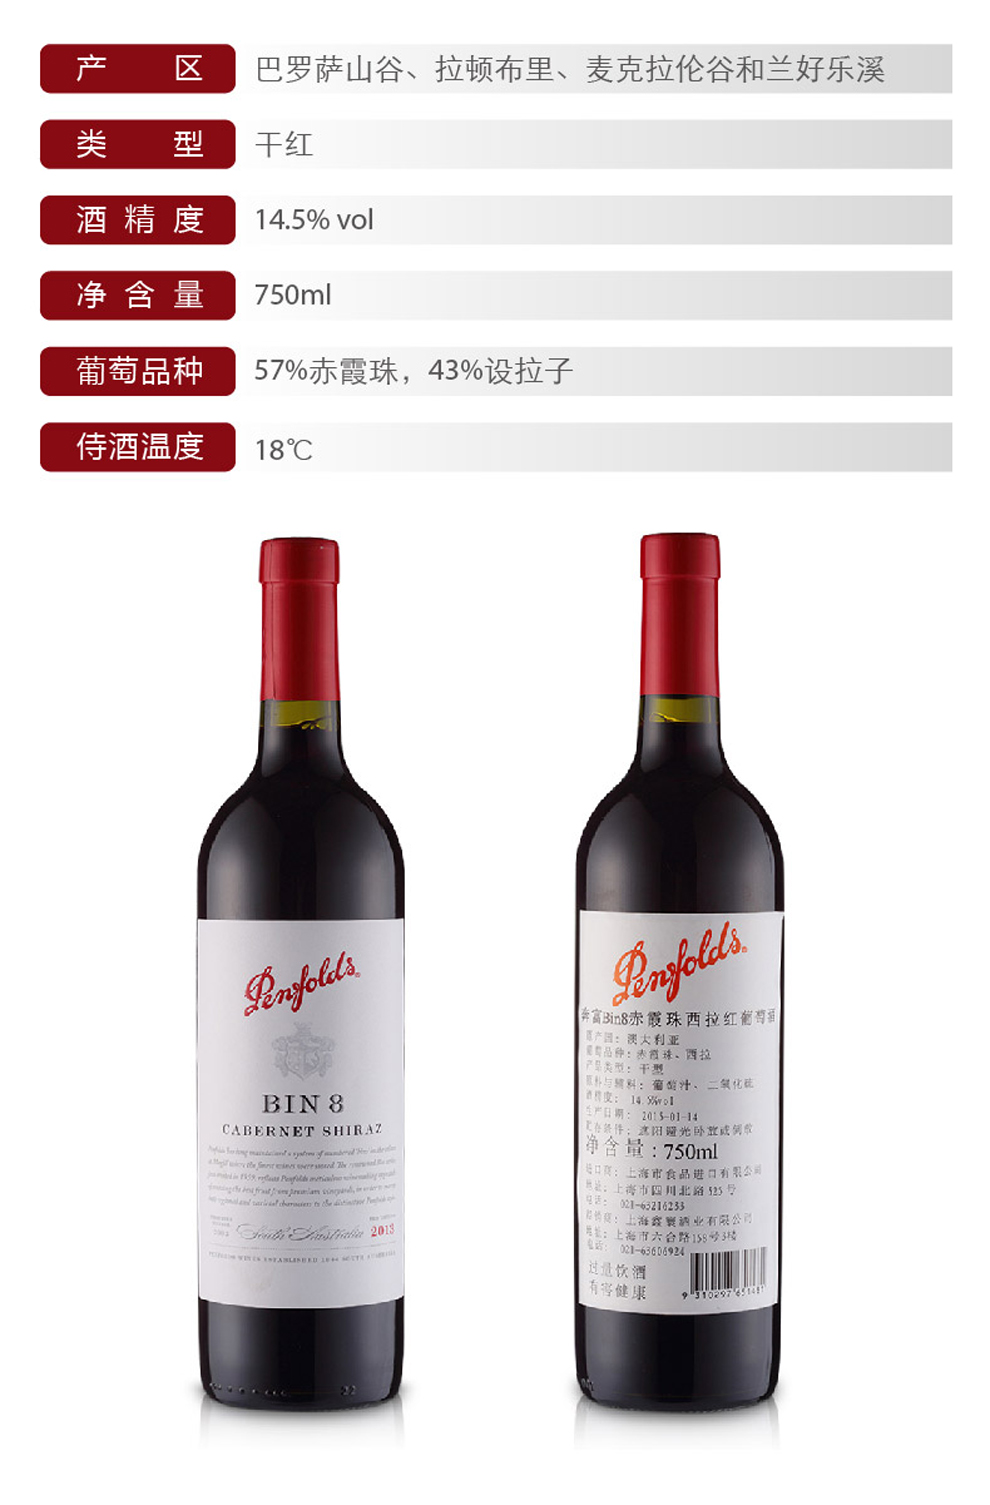 上海奔富红酒专卖奔富8批发价格BIN8团购价格